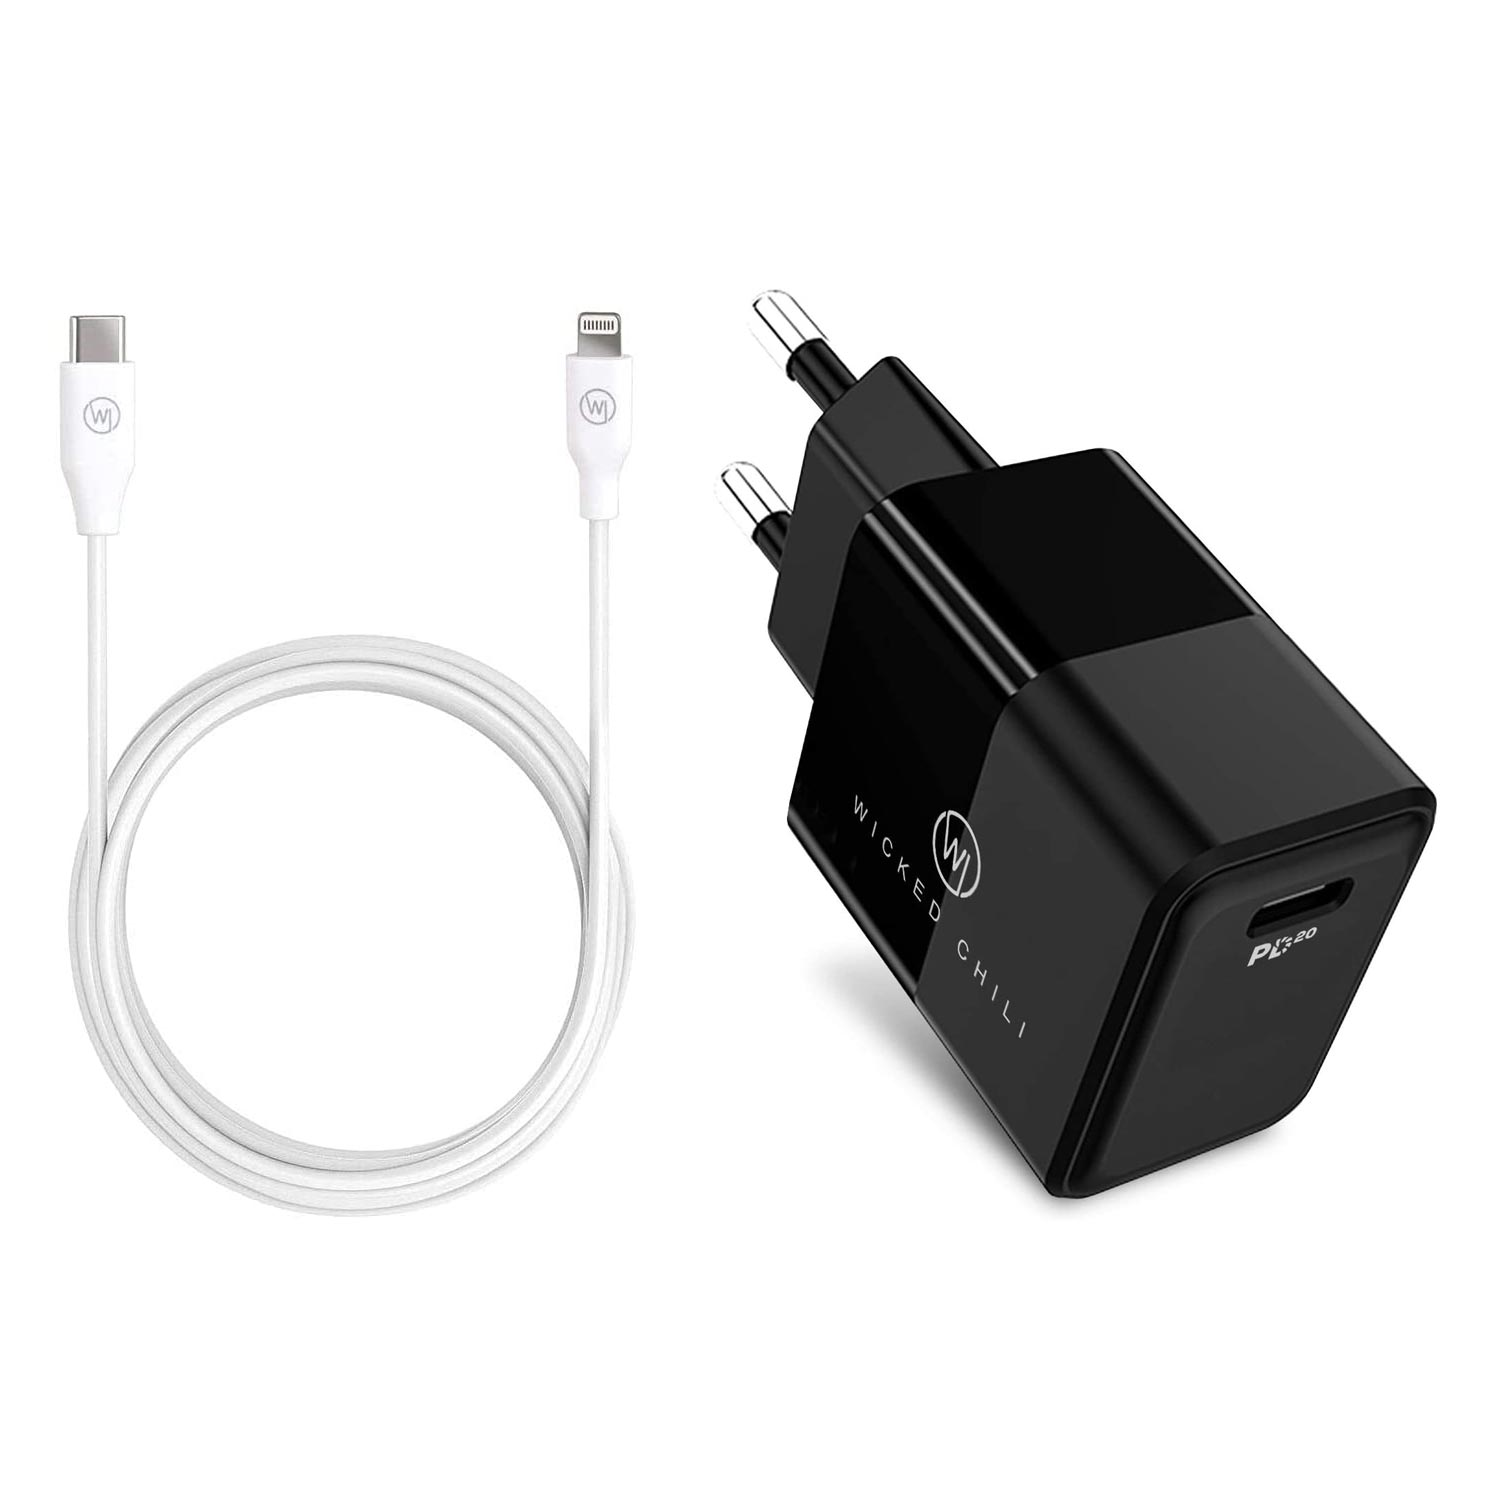 11 mit CHILI auf USB 12 / Netzteil Charge iPhone 20W für 13 14 C Netzteil Ladekabel Lightning / Fast WICKED USB-C / Lade-Set 1m